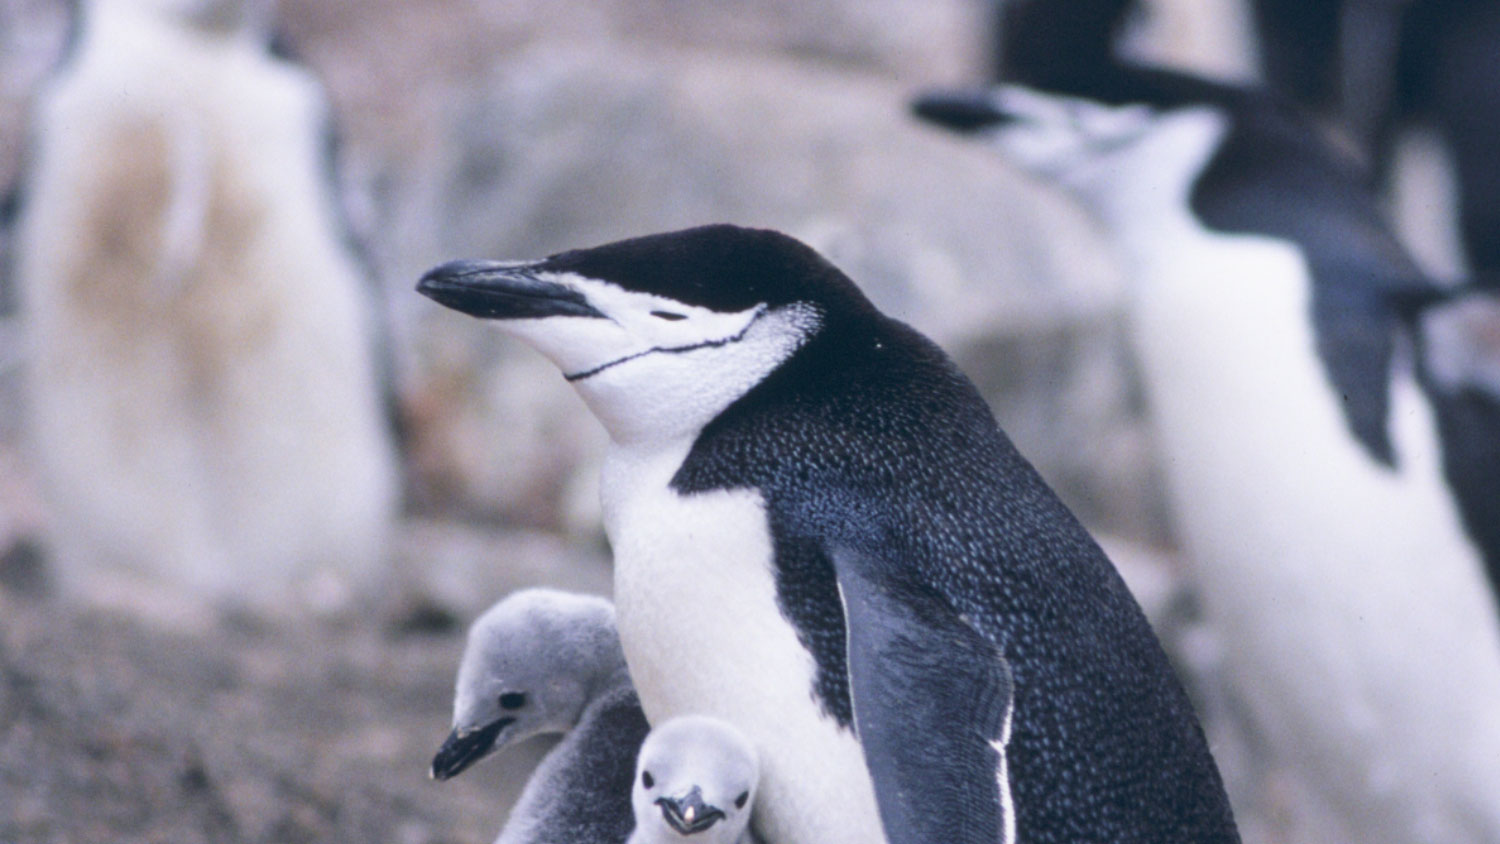 Pinguins tiram milhares de cochilos todos os dias | Mundo & História